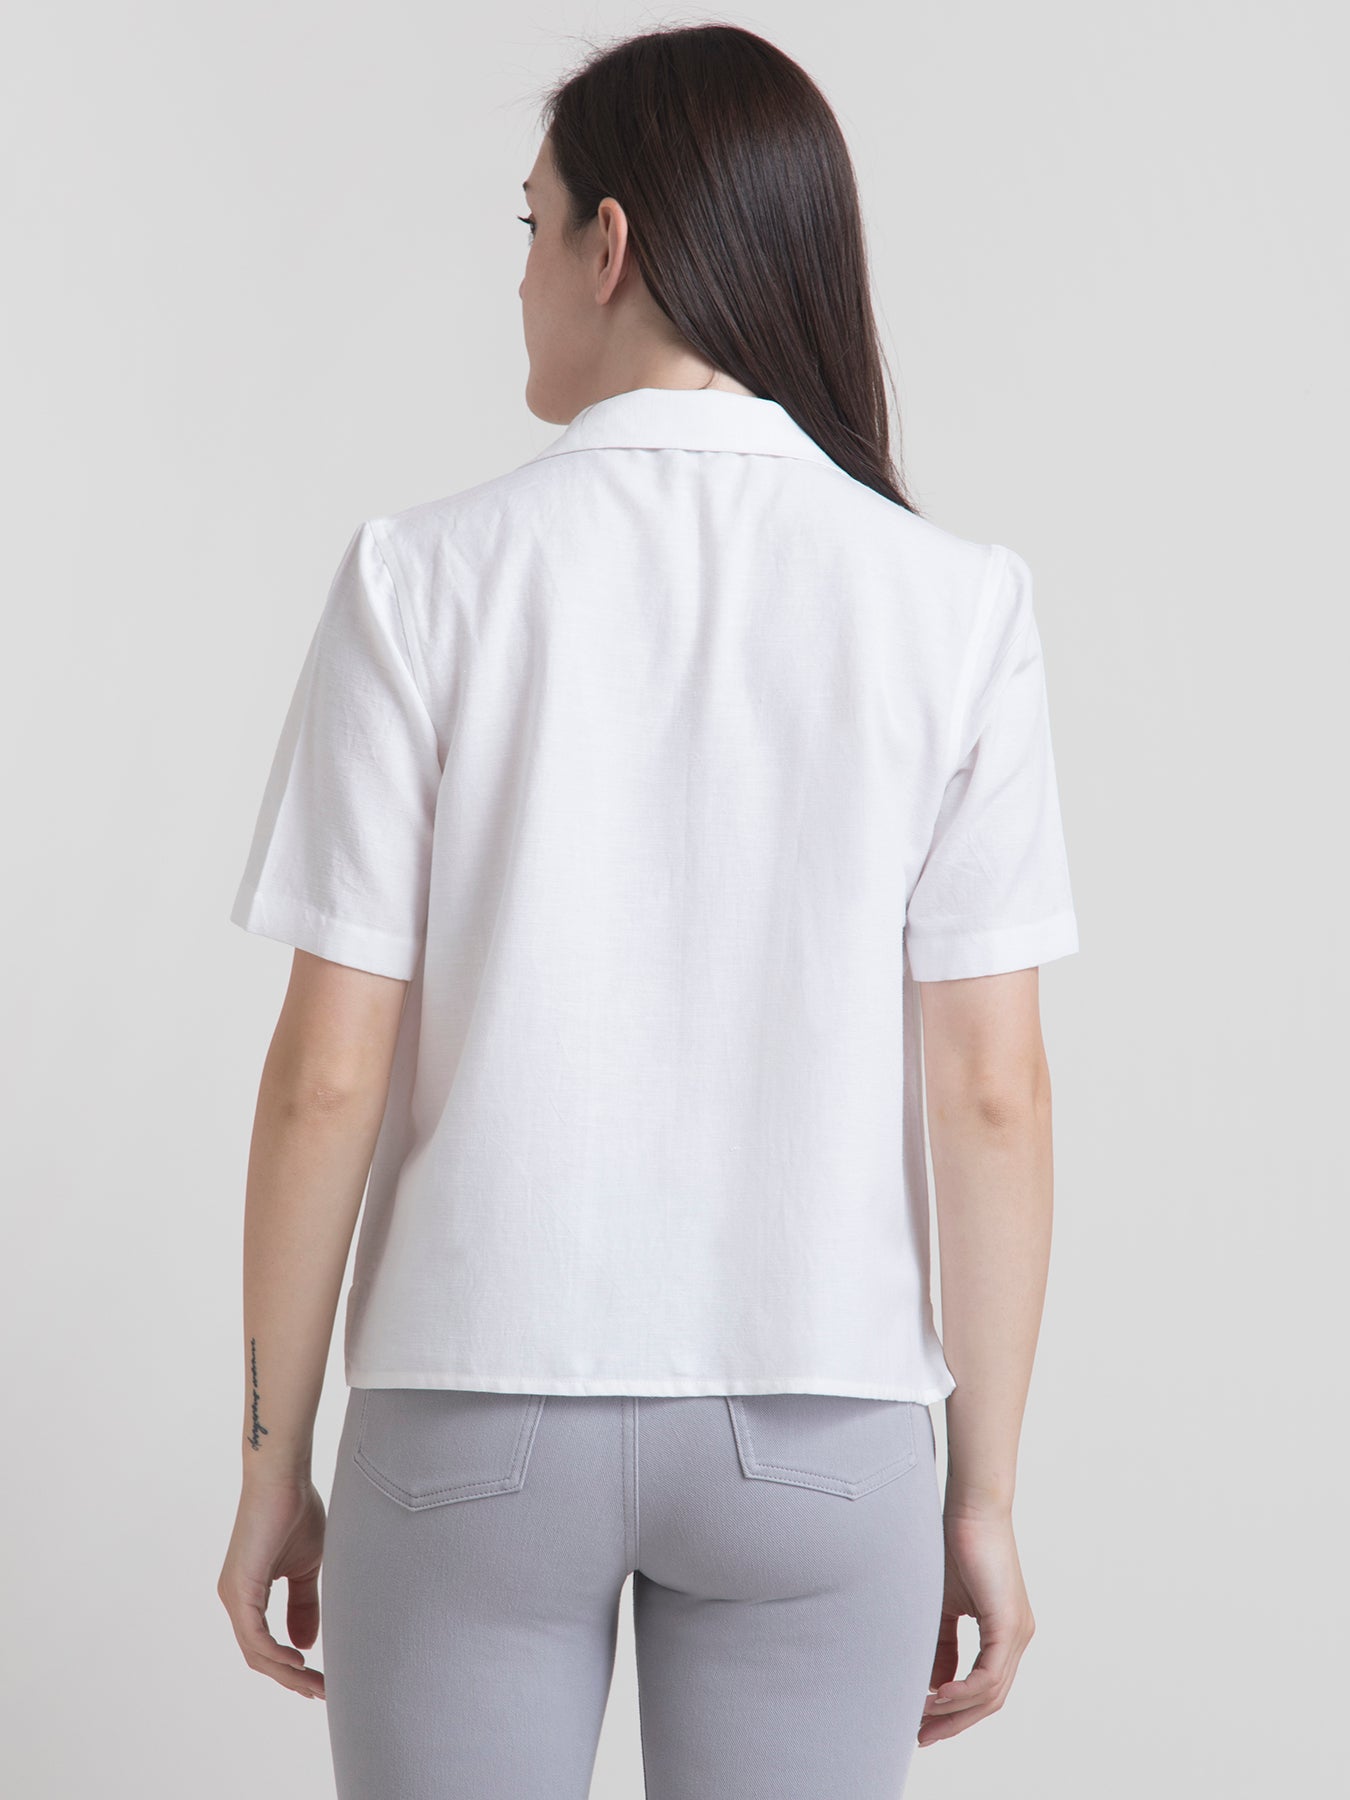 Cotton Notch Lapel Shirt - White